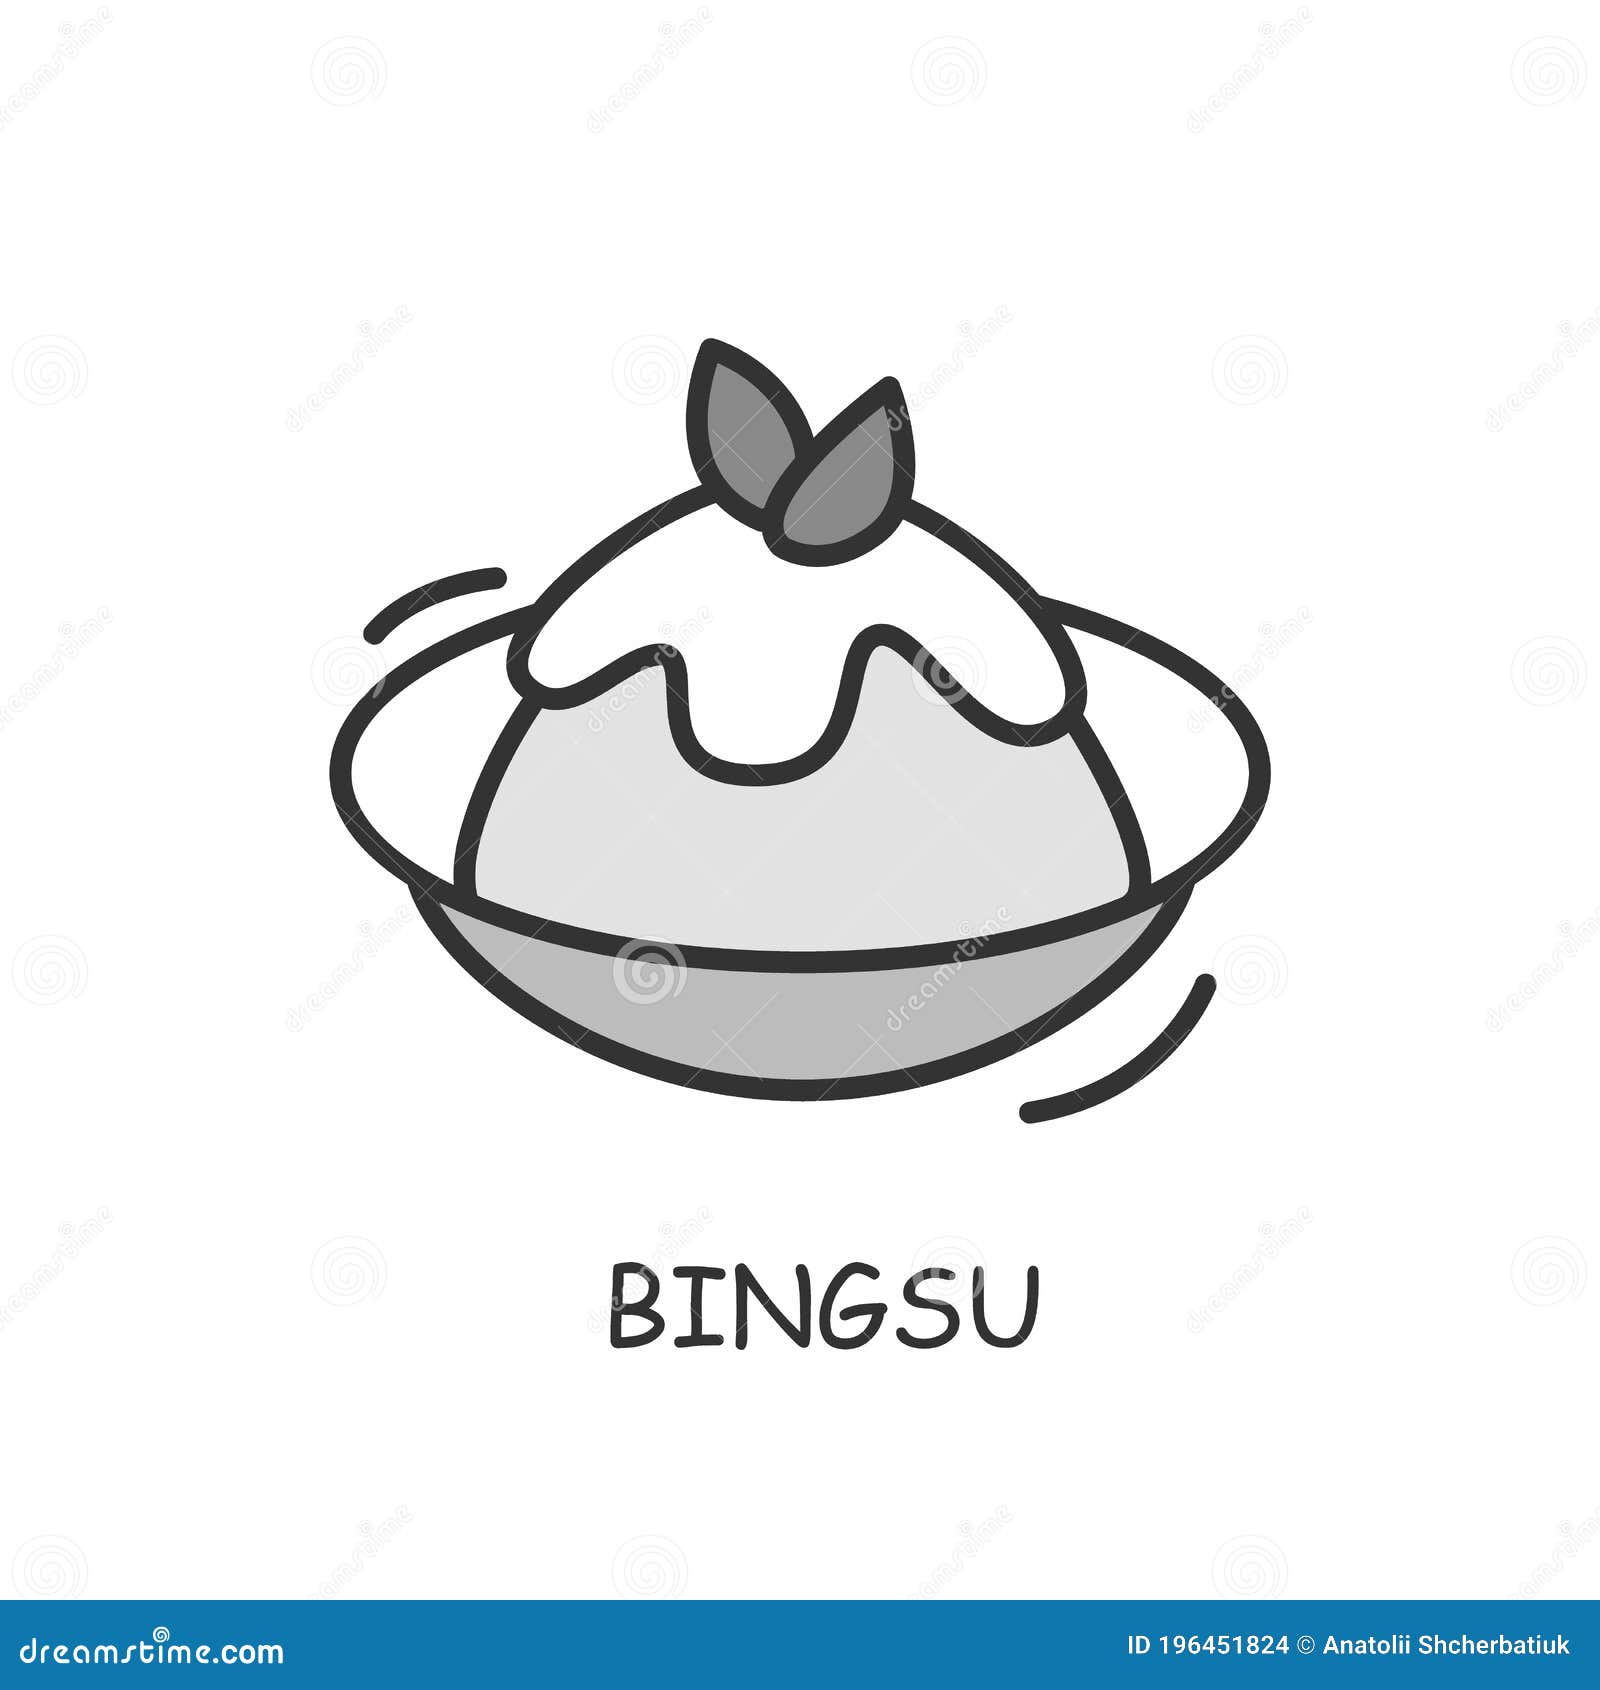 Bingsu